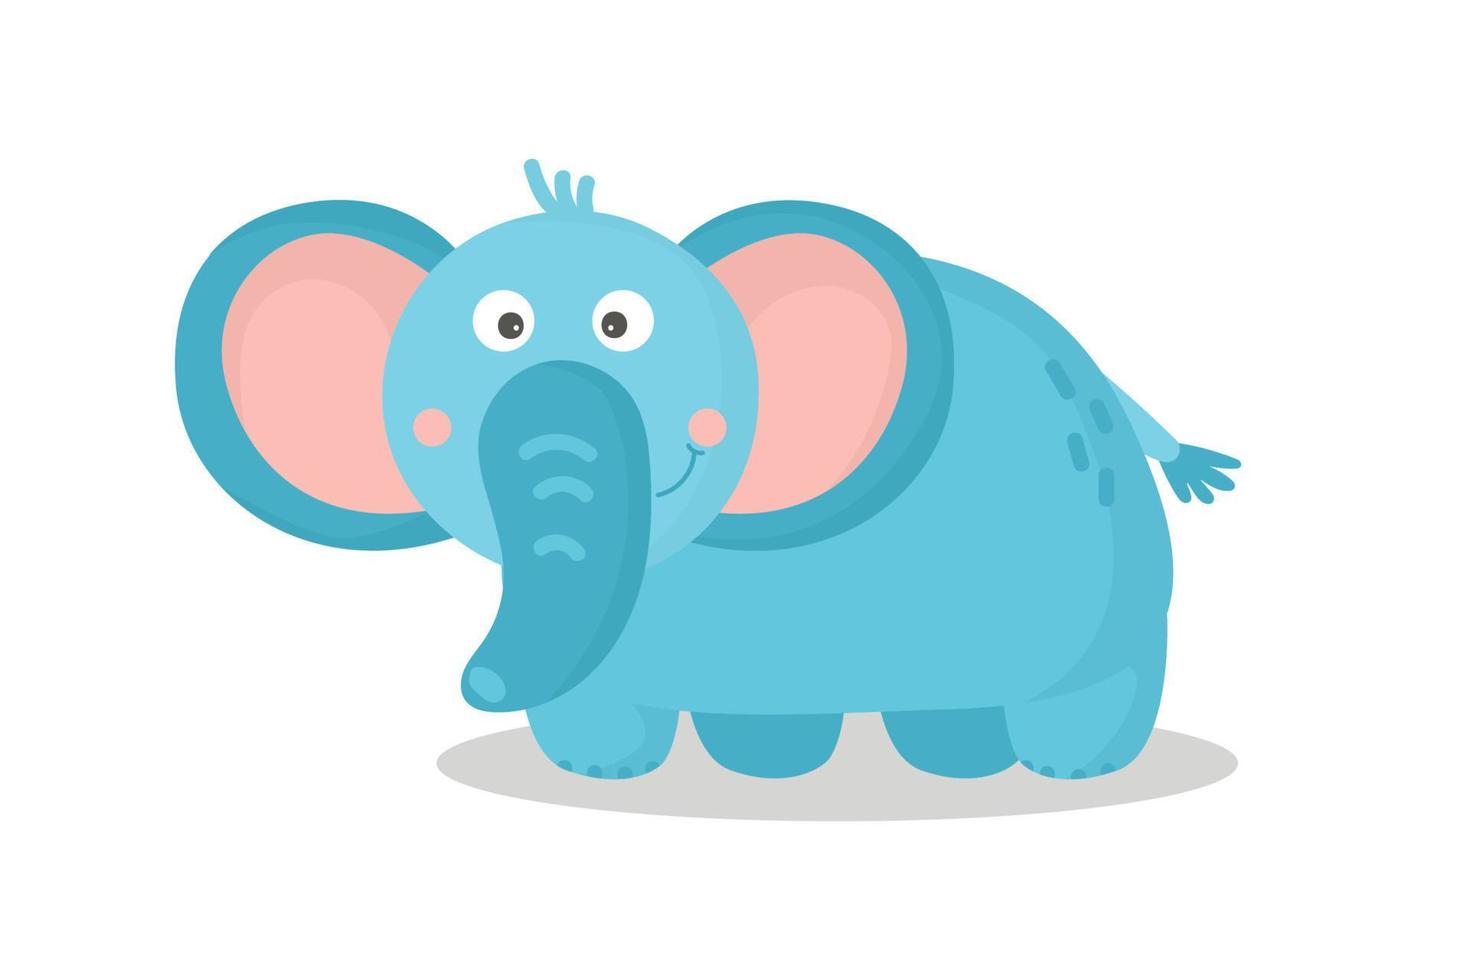 ein niedlicher Cartoon-Elefant. afrikanisches Tier. Zeichentrickfigur. der freundliche elefant. Entzückendes kleines afrikanisches Tier für Modedruck, Kinderbekleidung, Kindergarten, Poster, Einladung, Grußkartendesign vektor